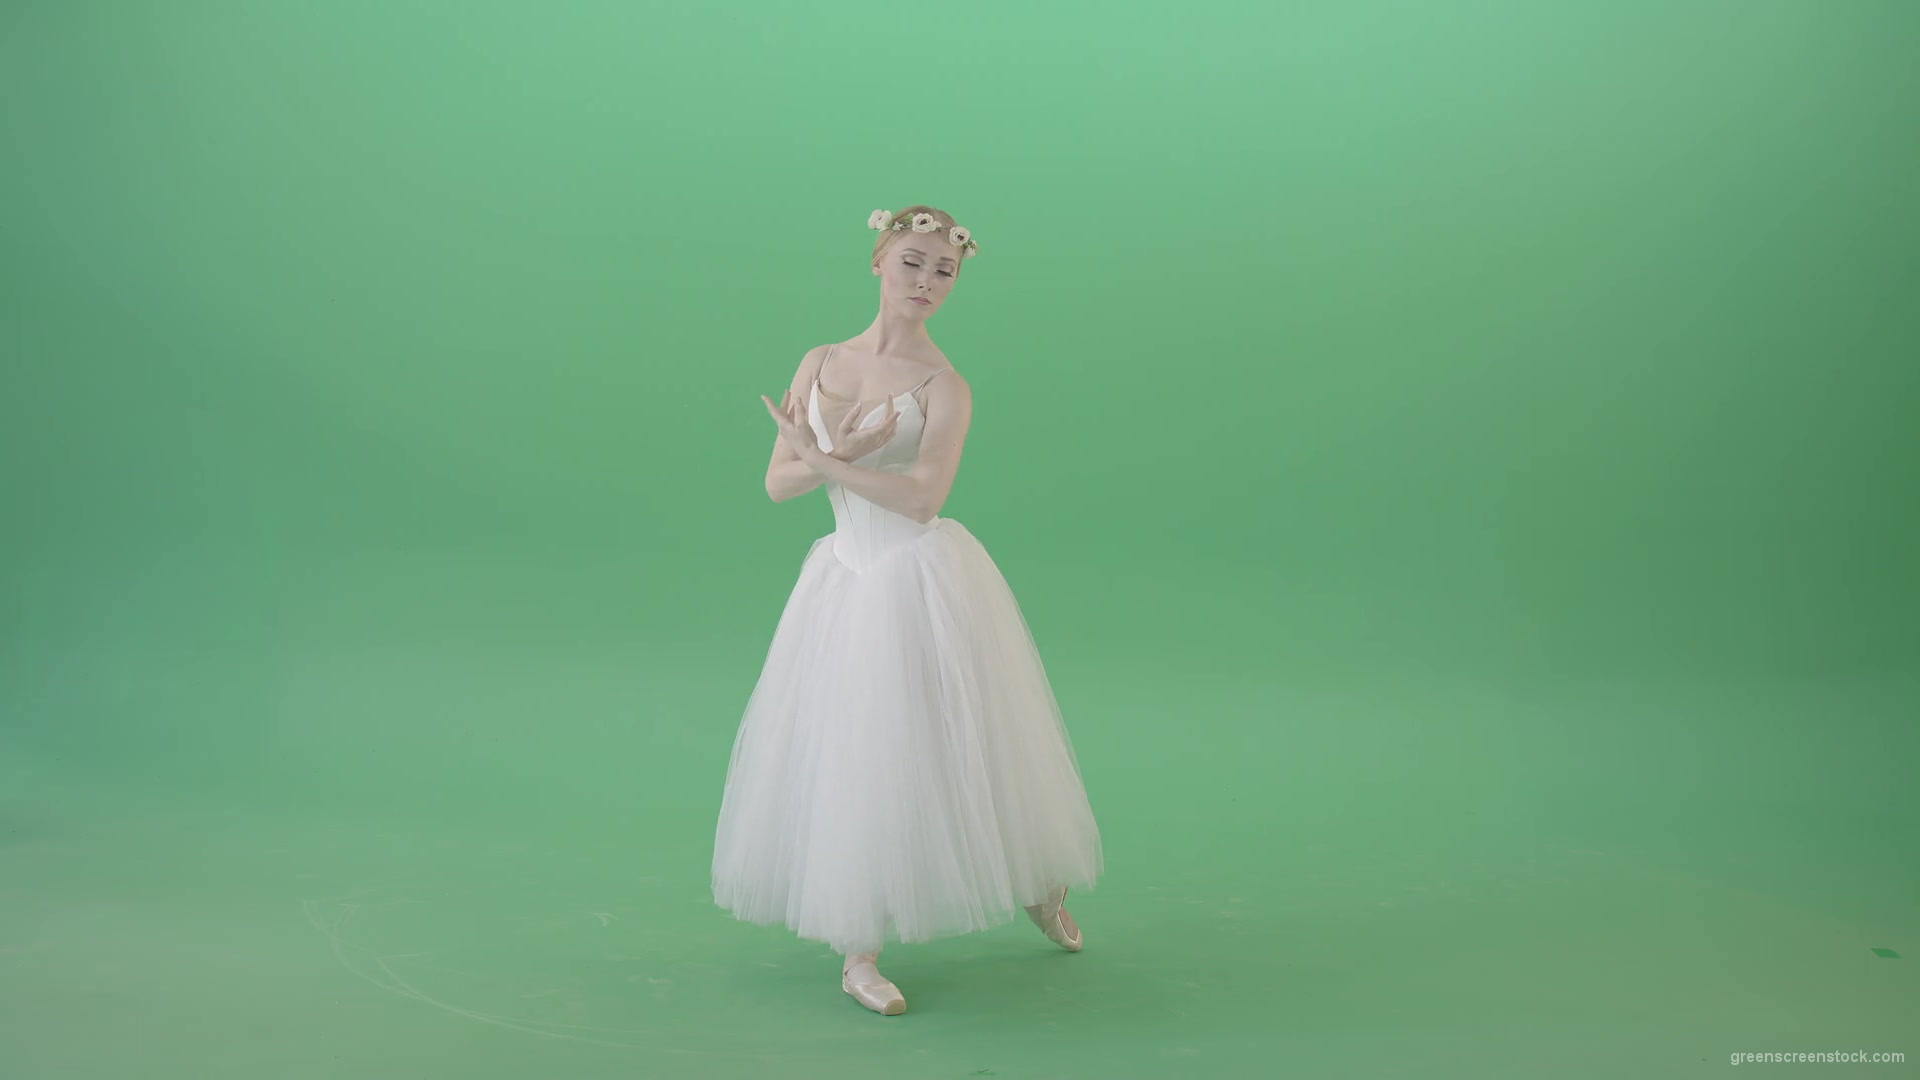 Elegant-Ballerina-Ballet-Girl-posing-for-Advertising-packshot-4K-Video-Footage-1920_009 Green Screen Stock